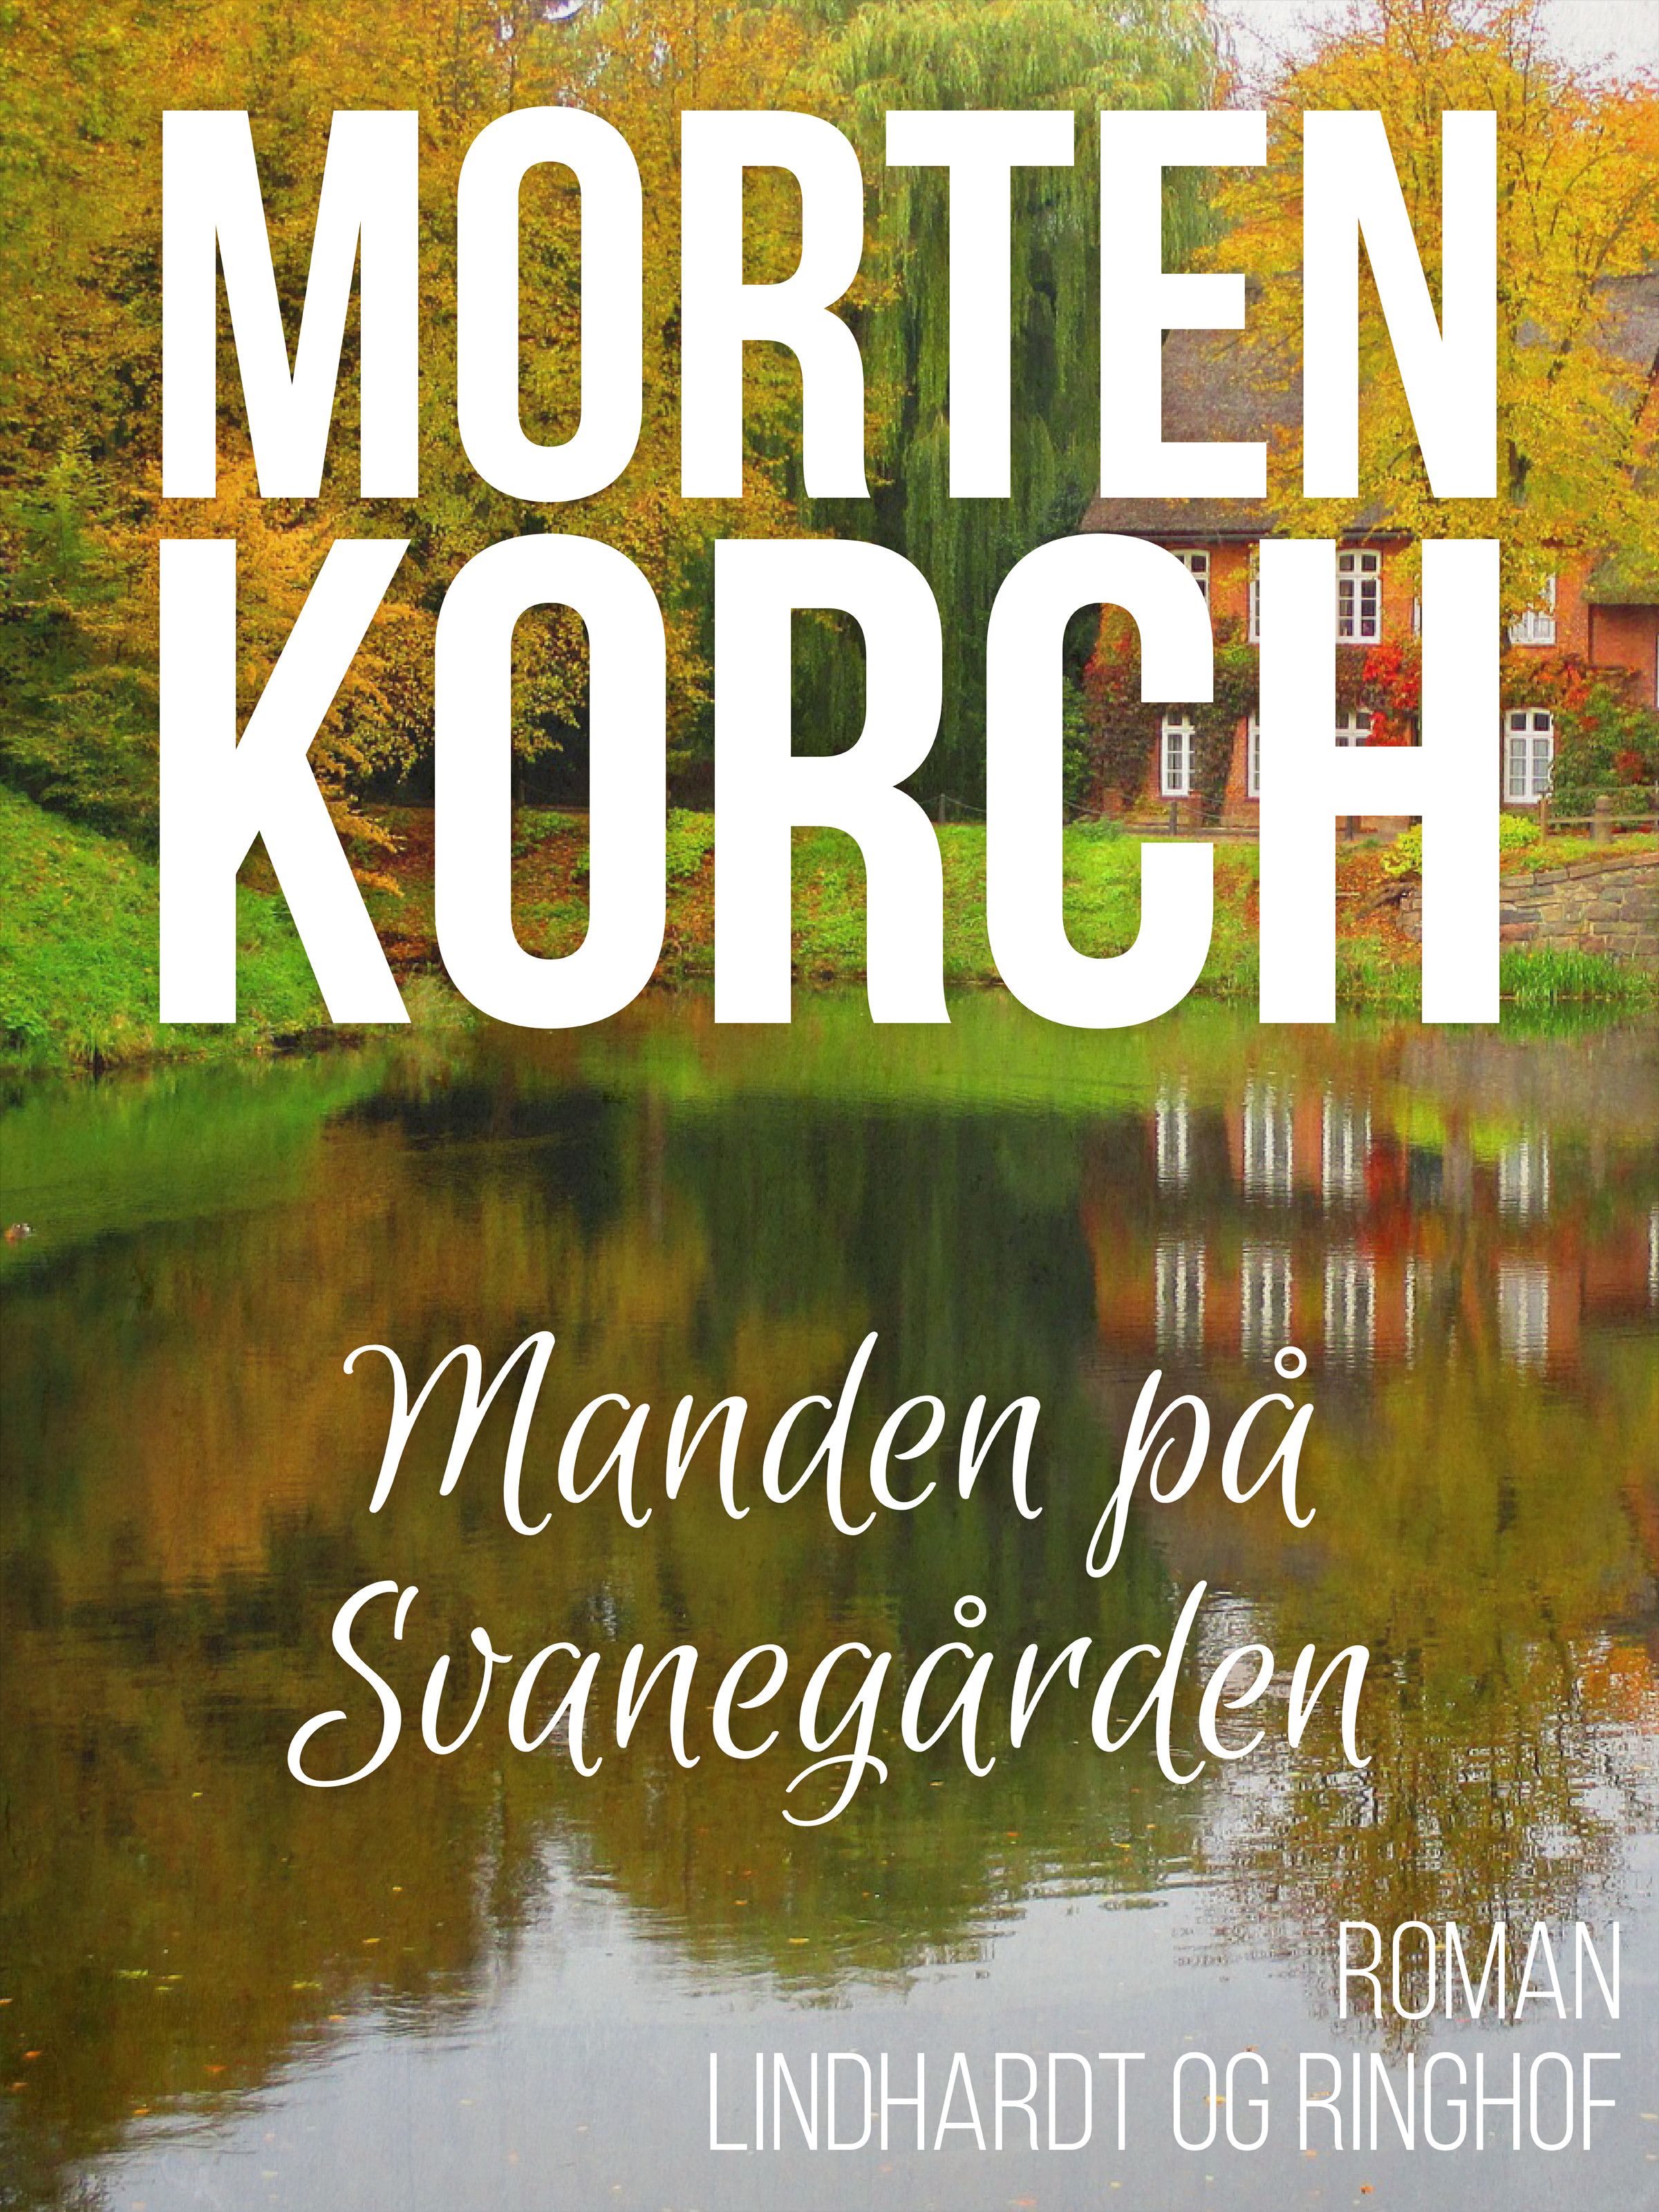 Manden på Svanegården, ljudbok av Morten Korch